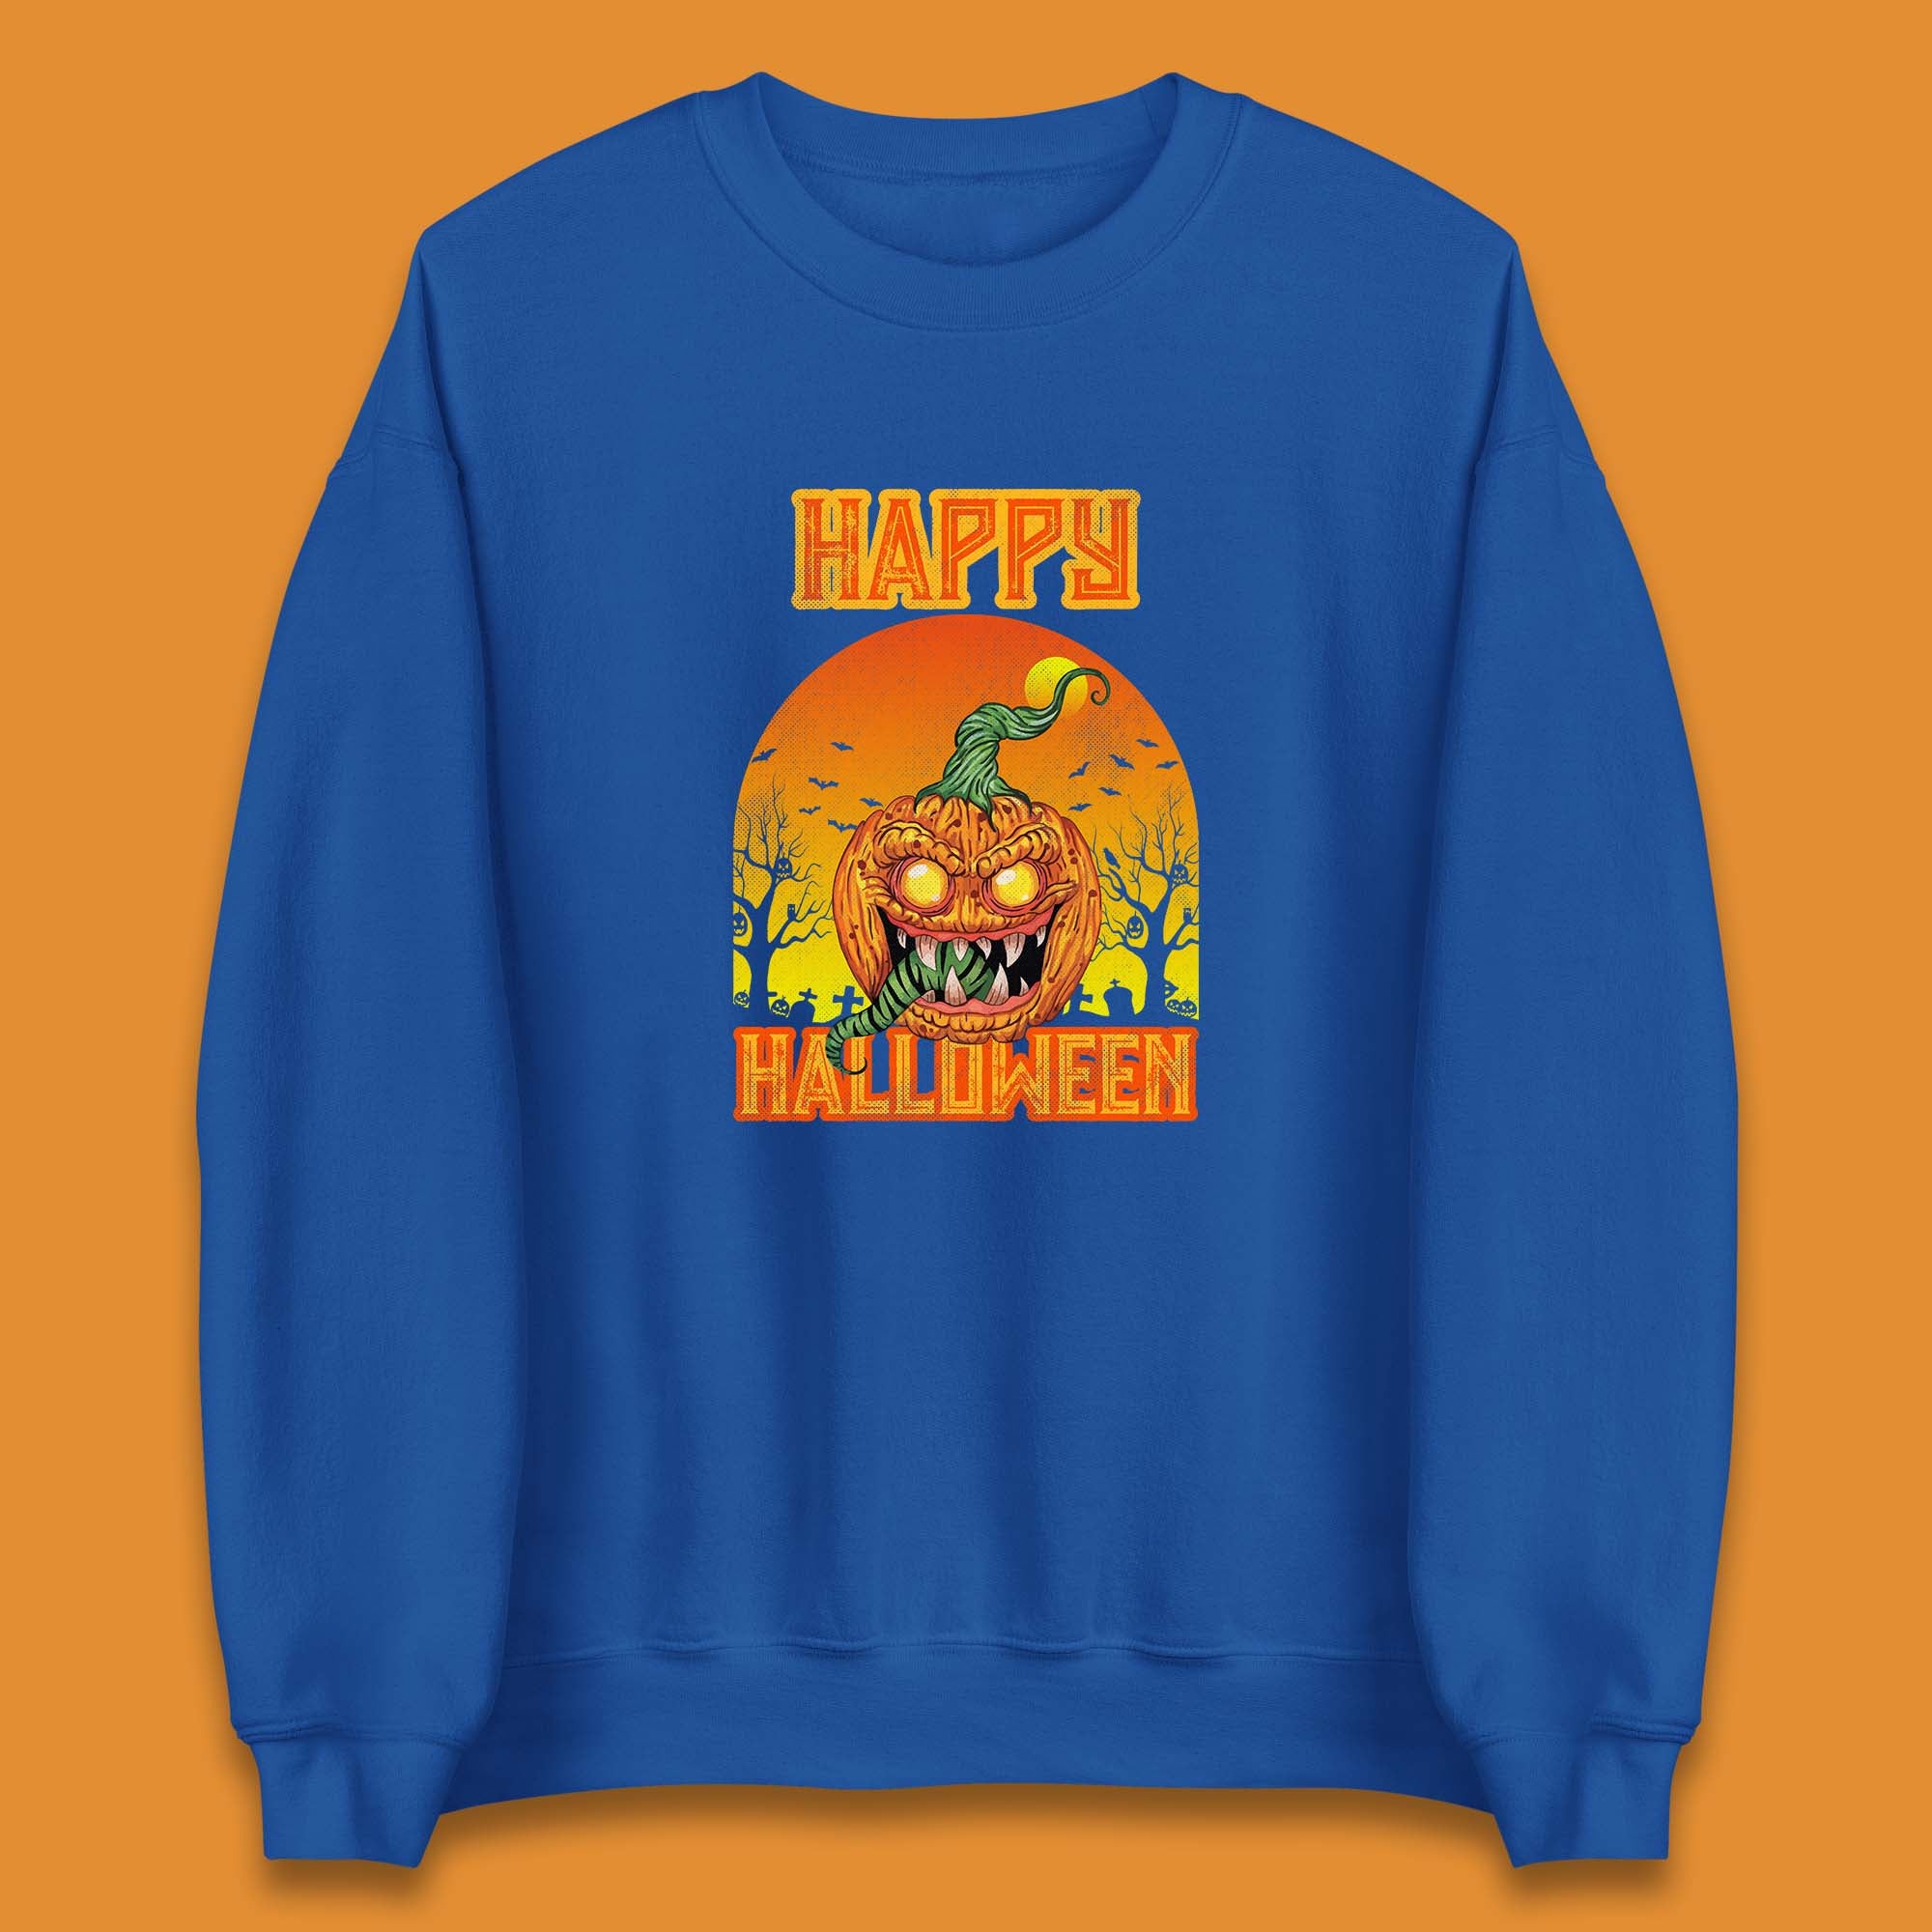 Happy Halloween Zombie Monster Pumpkin Jack-o-lantern Spooky Season Unisex Sweatshirt